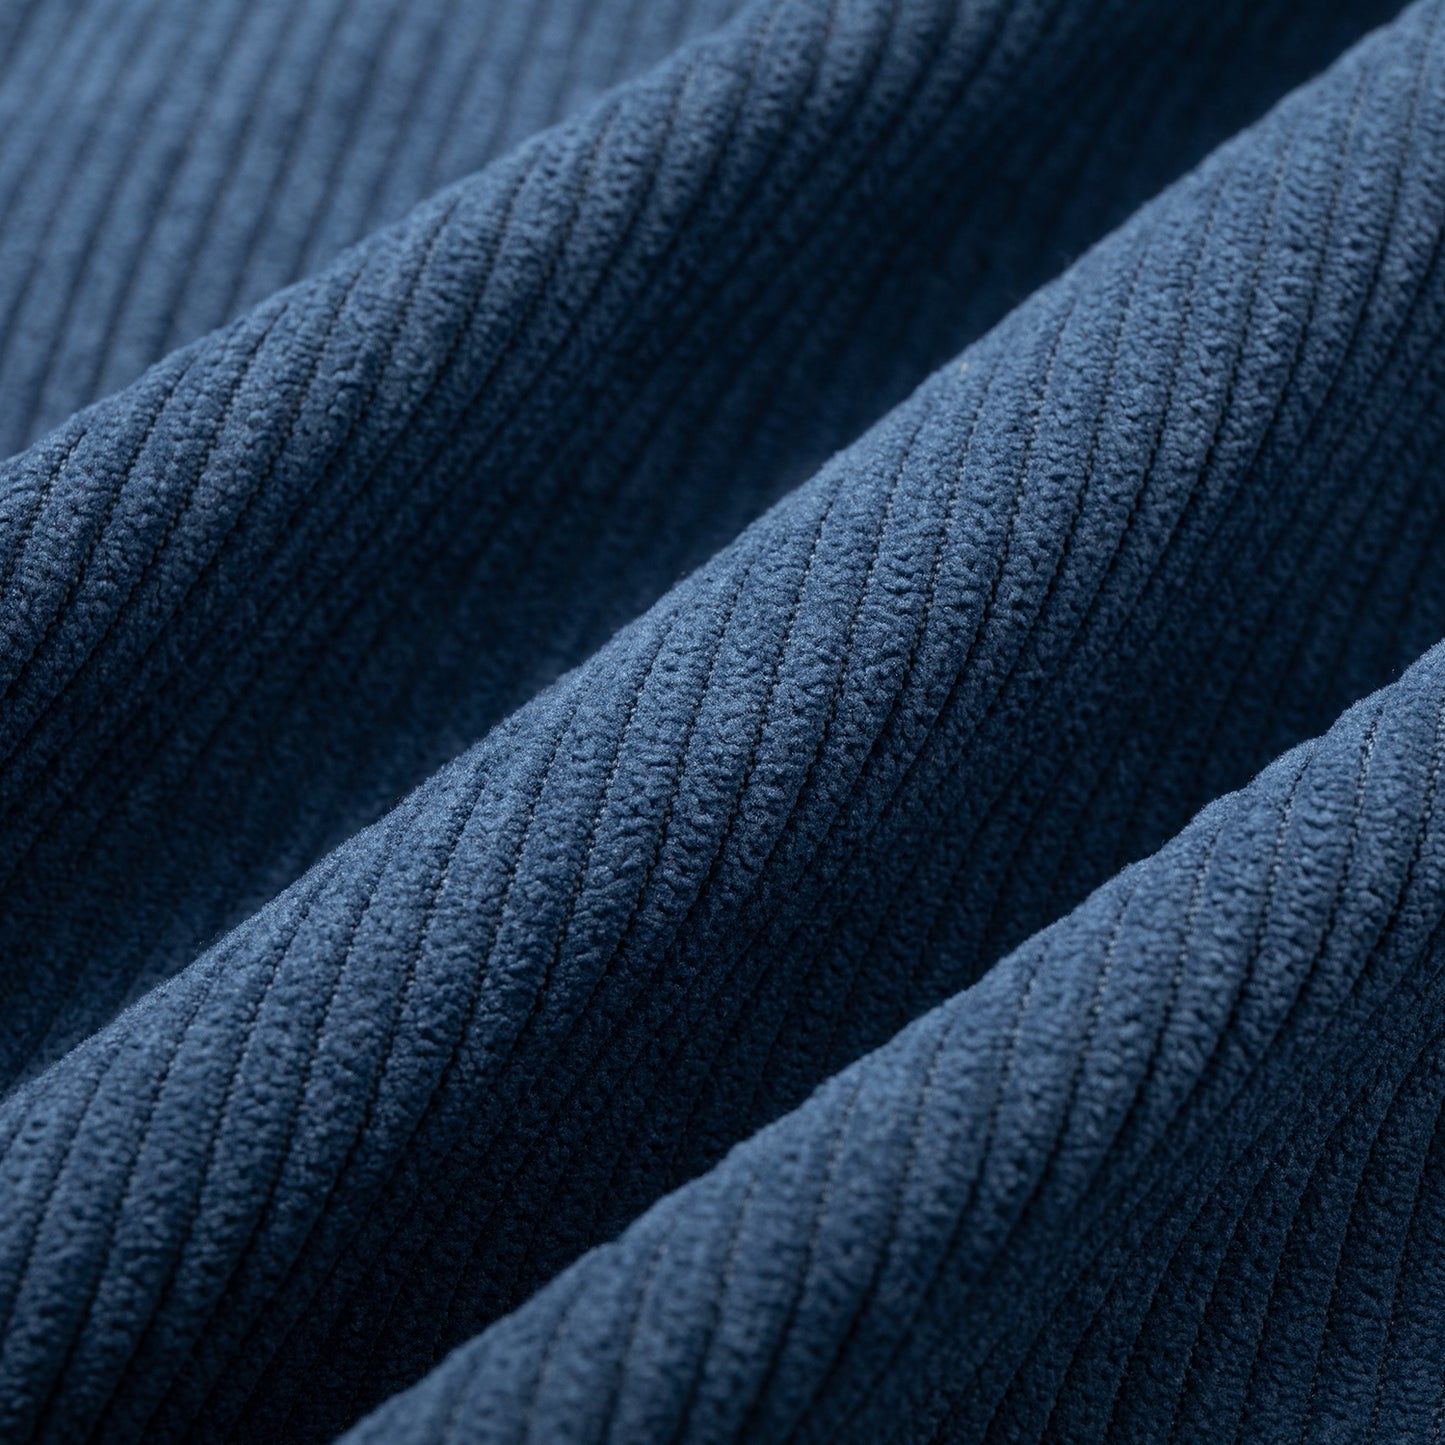 Shirt Velvet Series Zip Color block, light blue /graphite / blue